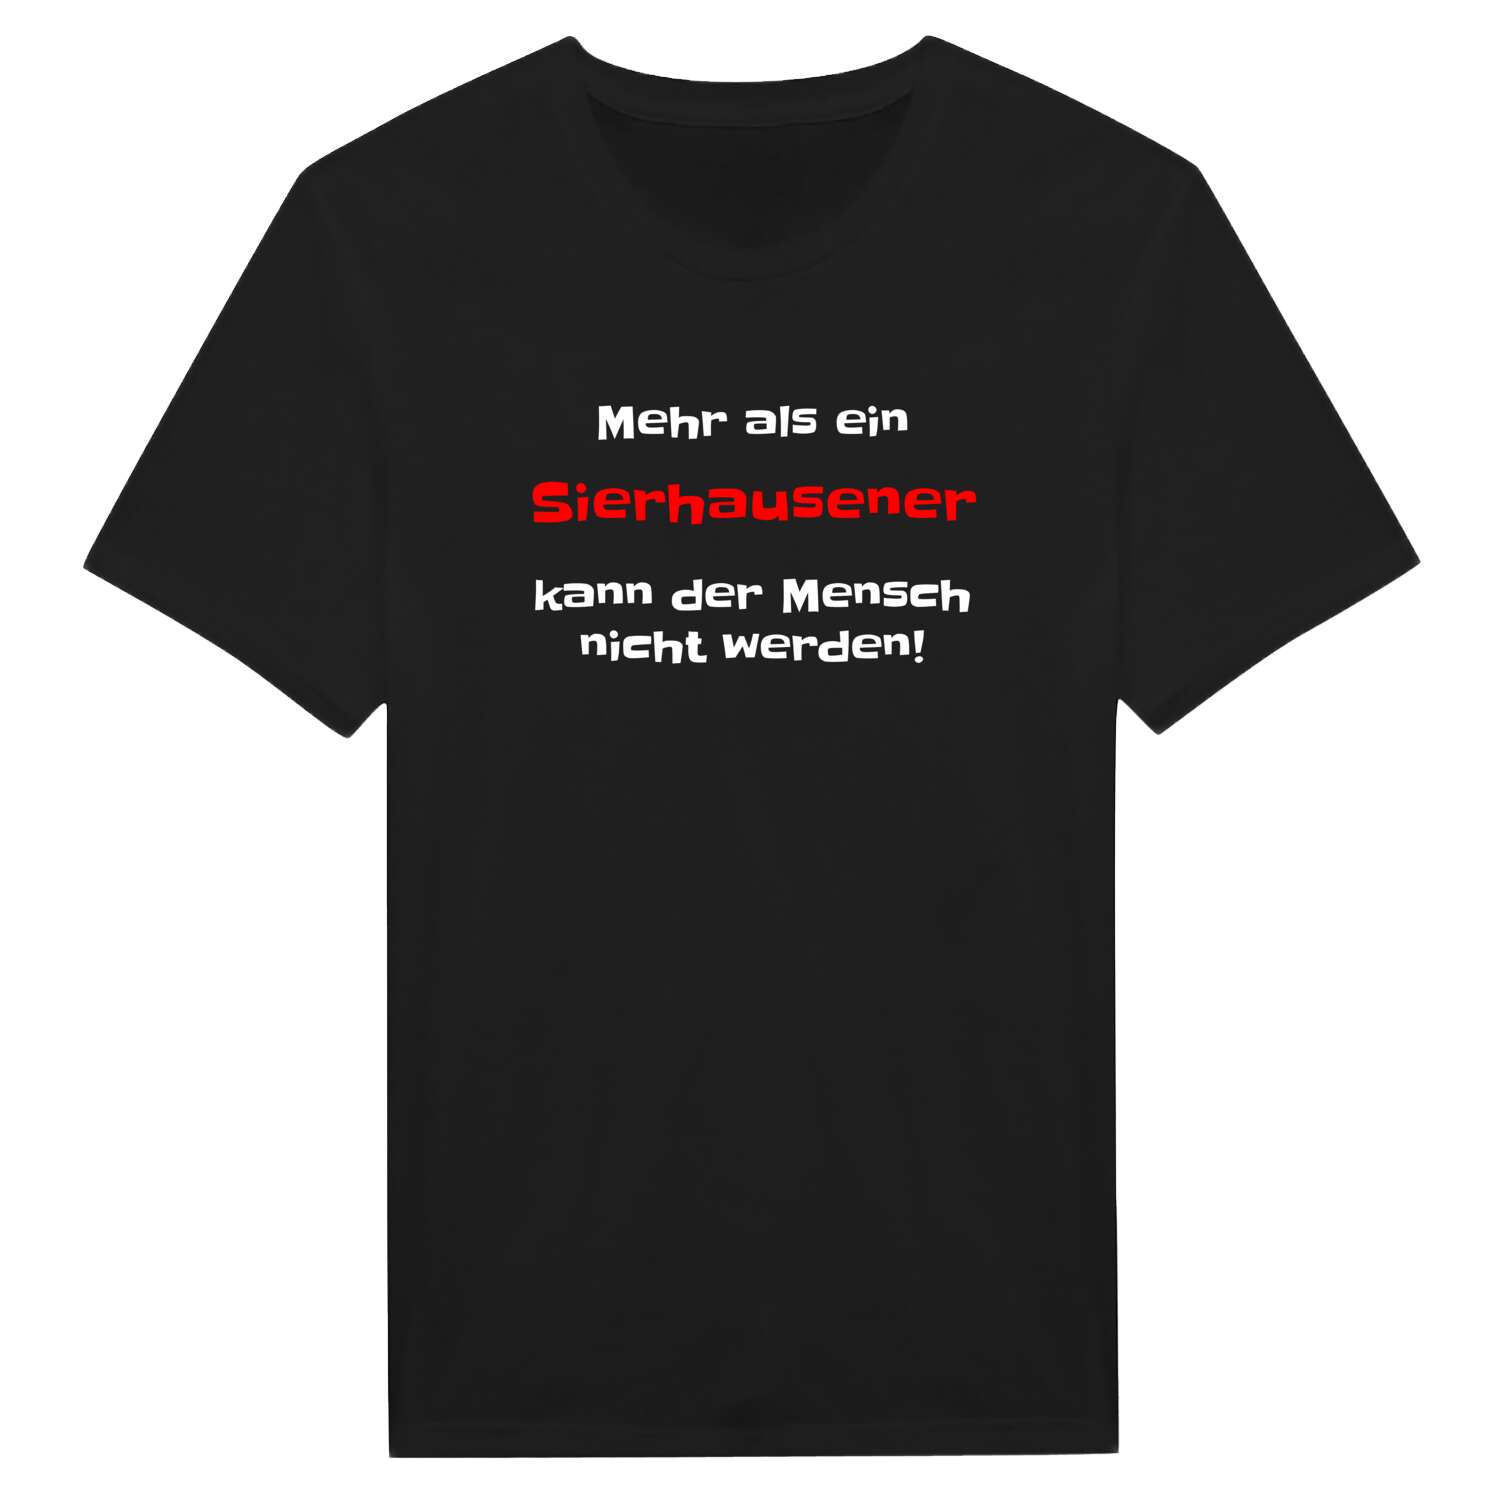 Sierhausen T-Shirt »Mehr als ein«